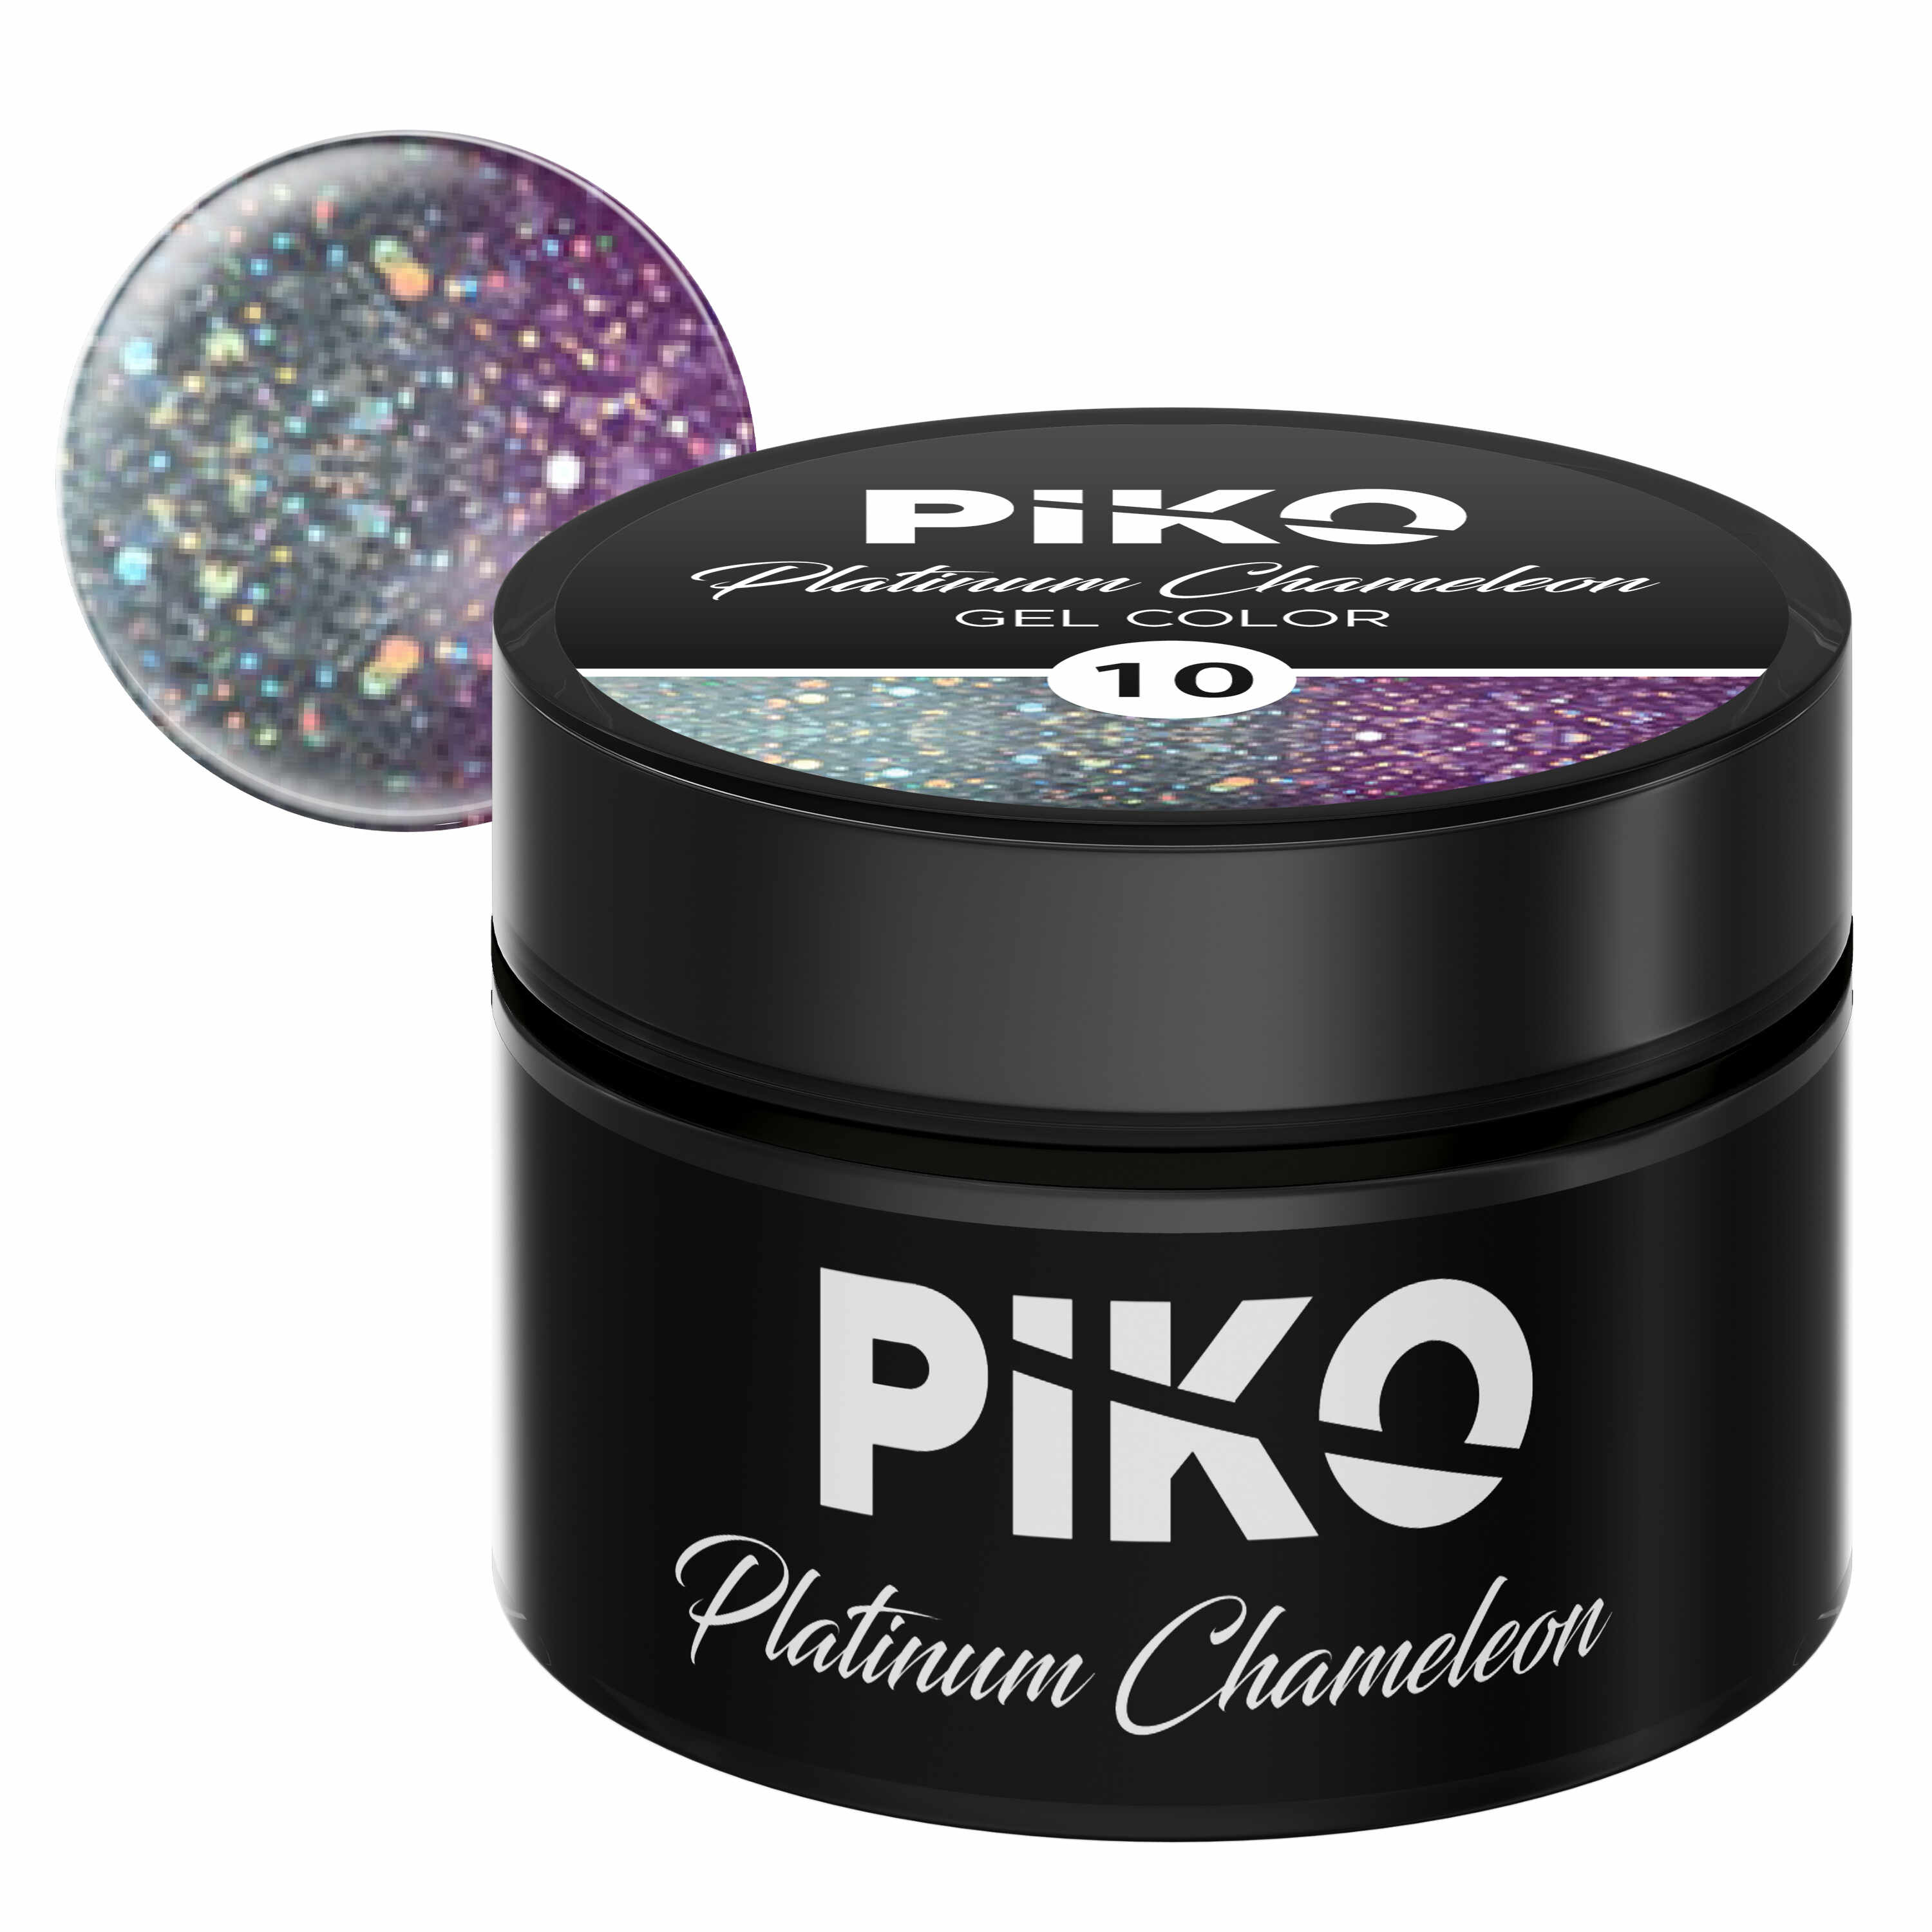 Gel color Piko, Platinum Chameleon, 5g, model 10